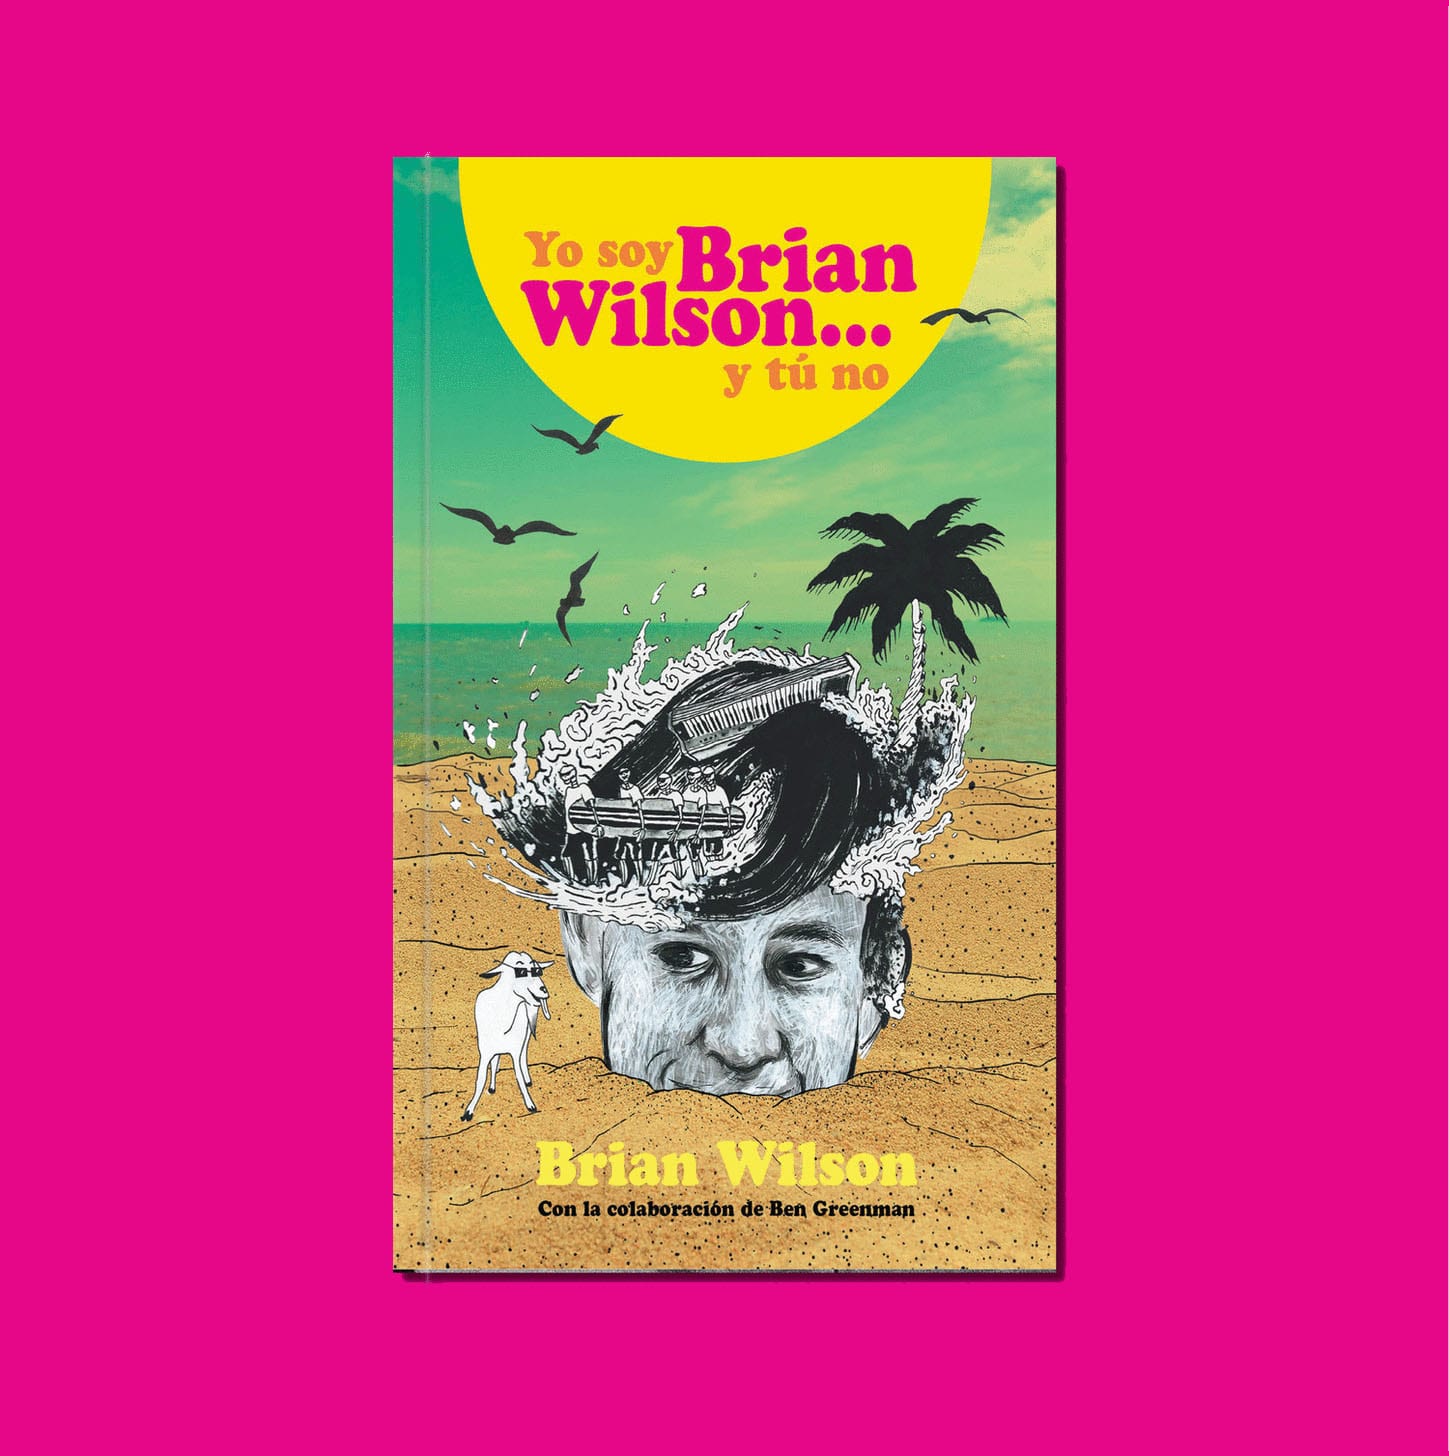 Las memorias del cerebro, compositor principal y cofundador de los Beach Boys